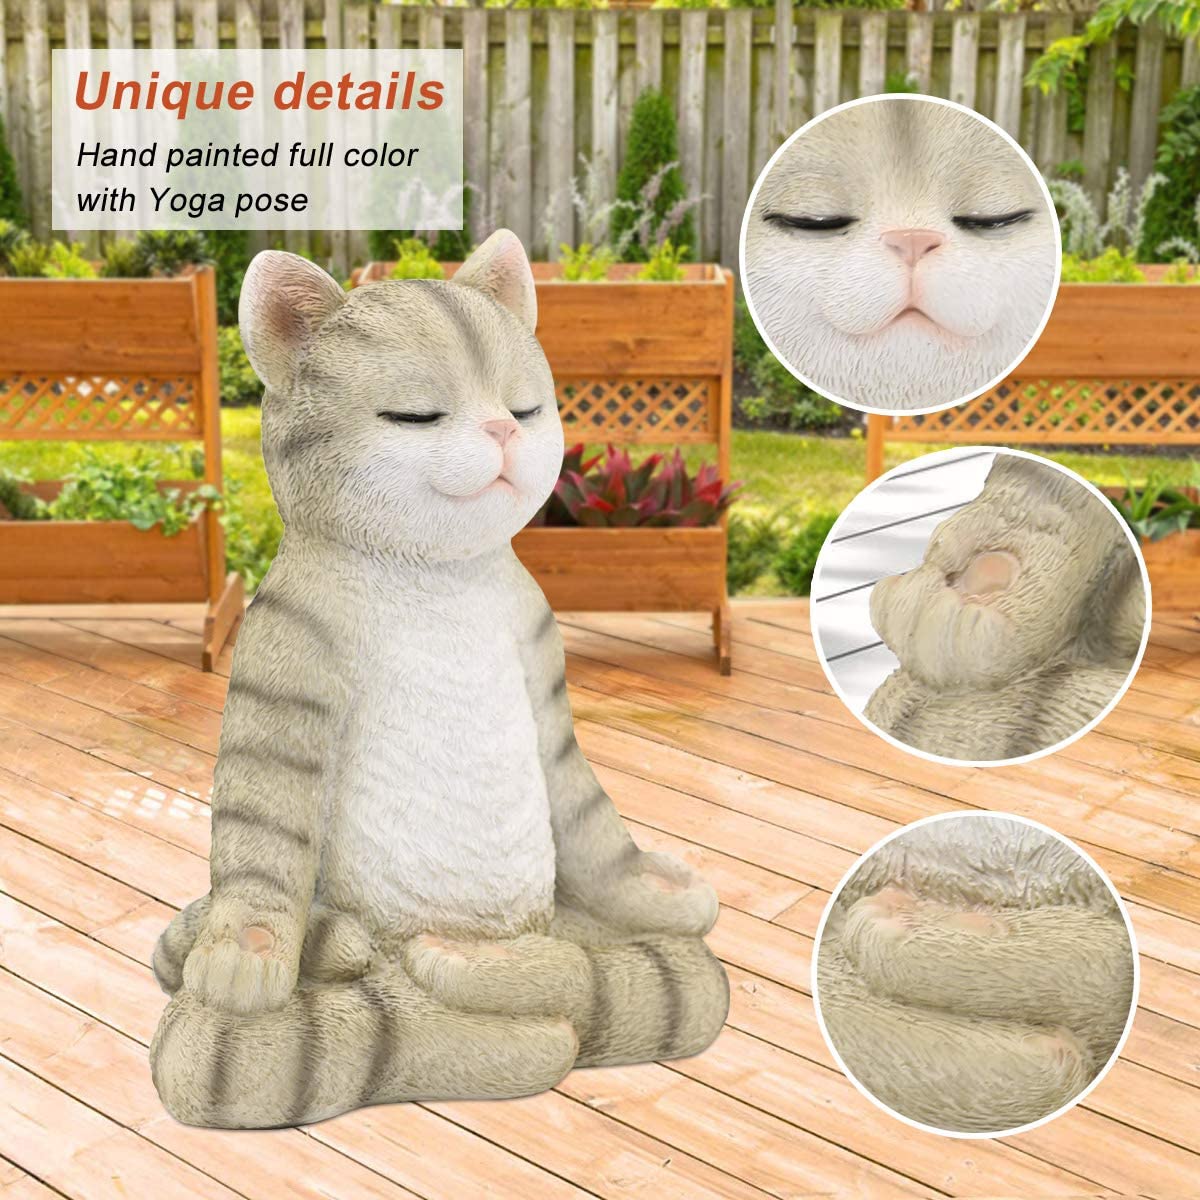 Meditating Zen Garden Cat Statue Figurine - Indoor/Outdoor Garden Cat Sculpture for Home,Garden,Patio, Deck,Porch Yard Art or Lawn Decoration,8.7" H(Gray Cat) - image 4 of 7